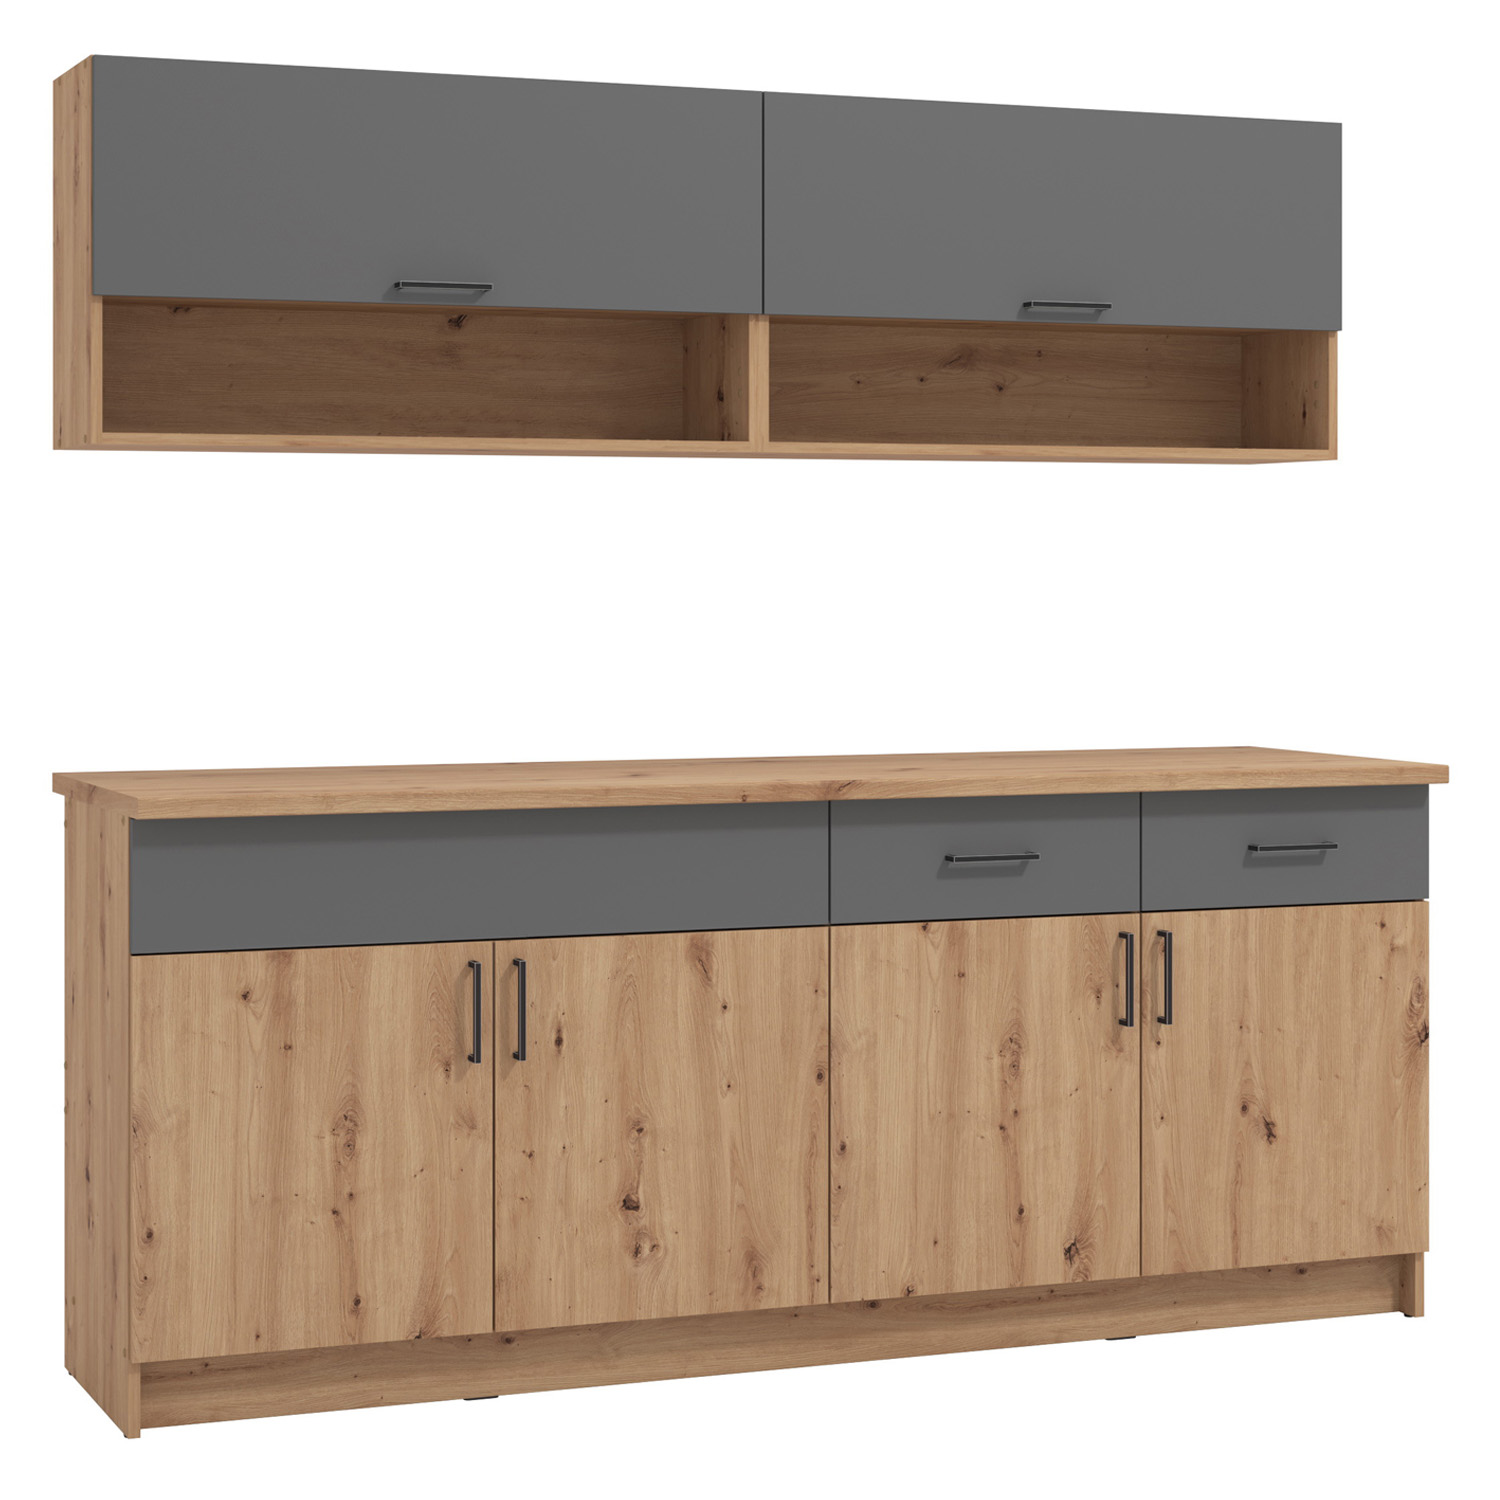 Modern Kitchen Wood Oak 200 cm Kitchen Island Grey Kitchen Cabinets Kitchen Units Kitchen Cupboards